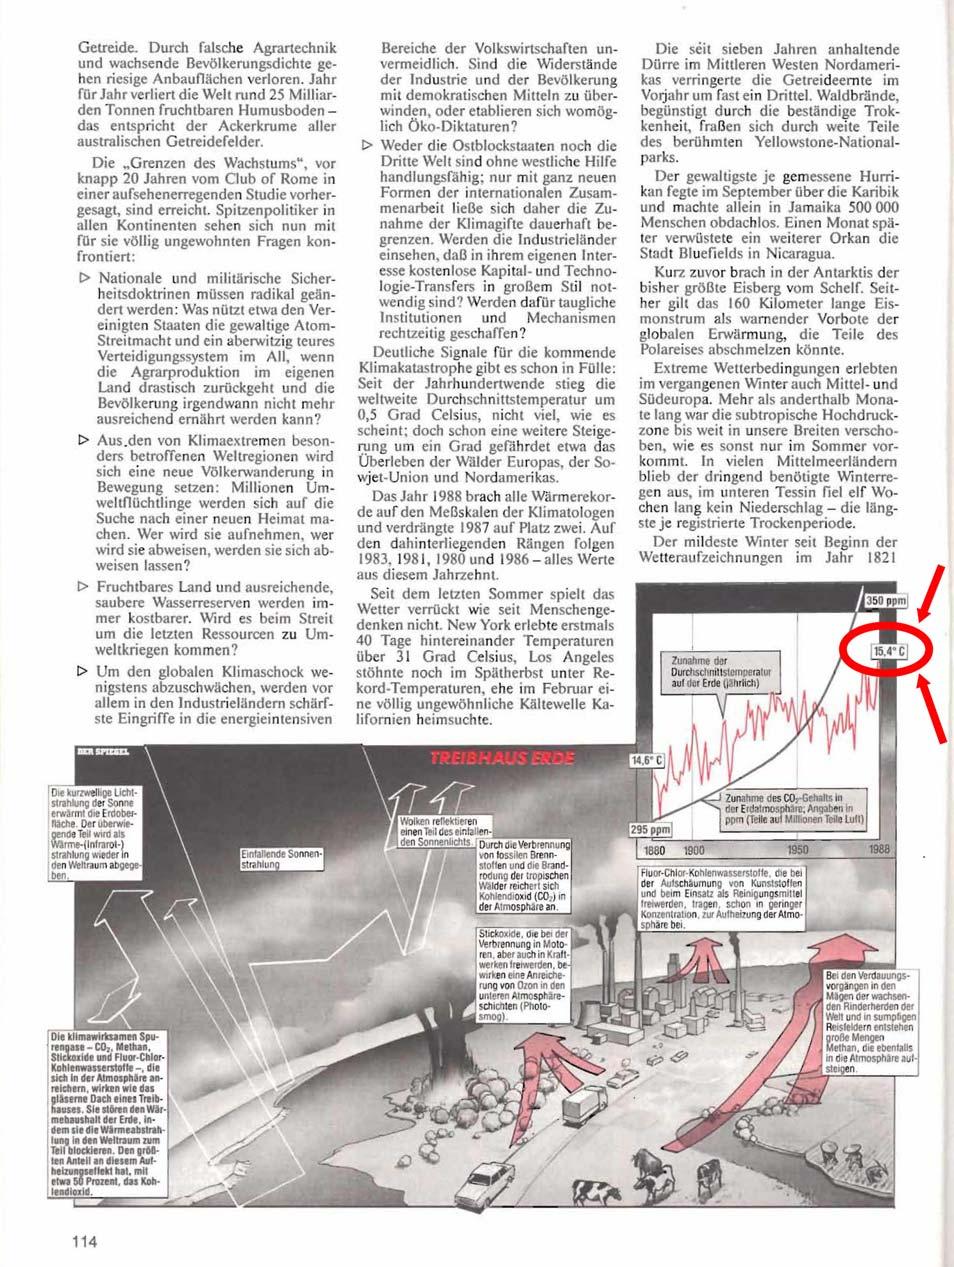 Seite 6 von 23 Pos. 05: Grafik Treibhaus Erde auf der Seite 114 aus SPIEGEL 29/1989, 17.